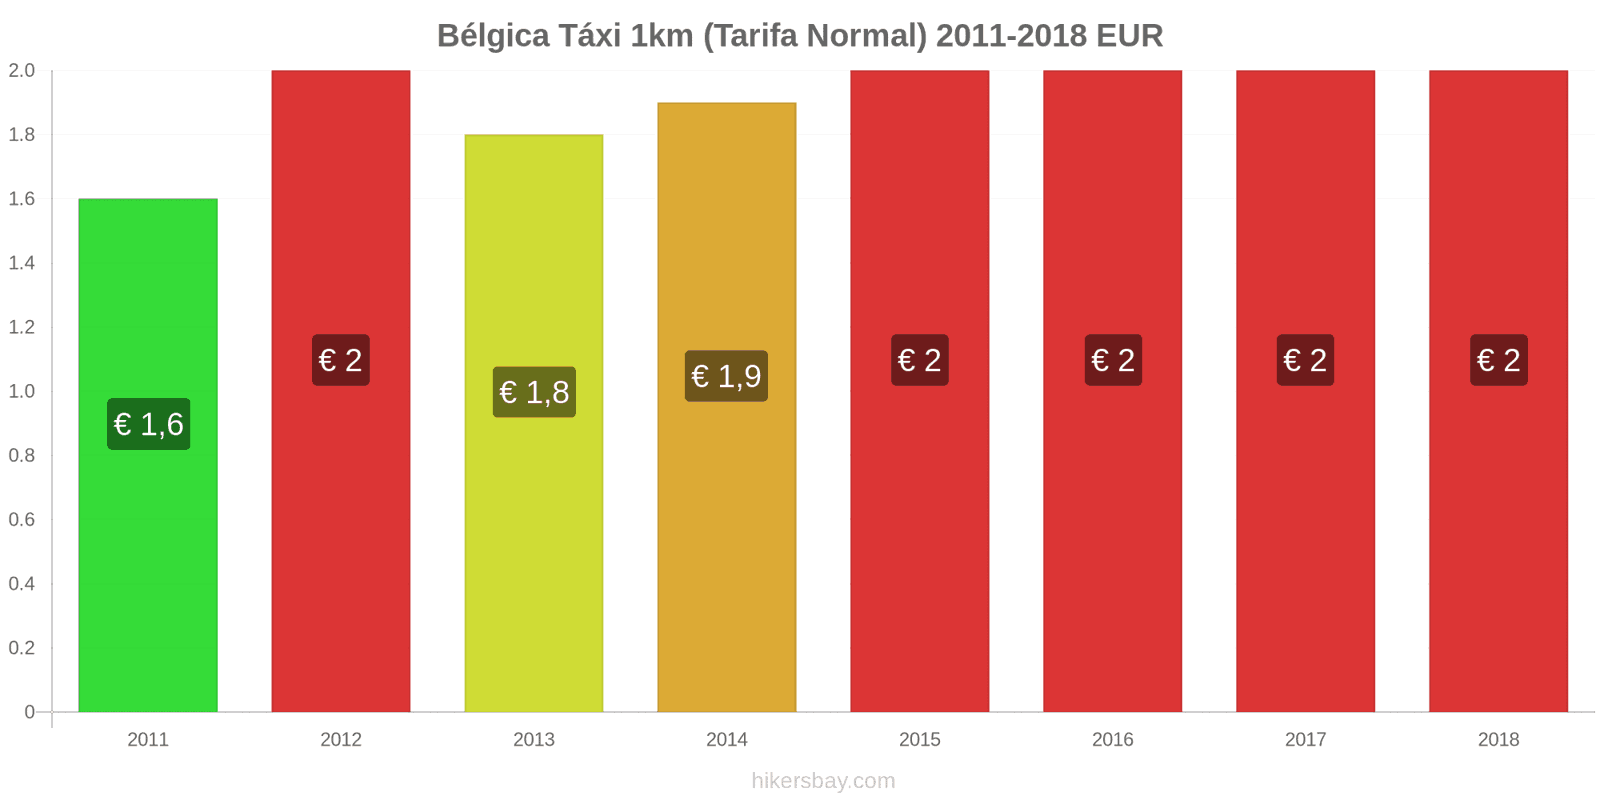 Bélgica mudanças de preços Táxi 1km (Tarifa Normal) hikersbay.com